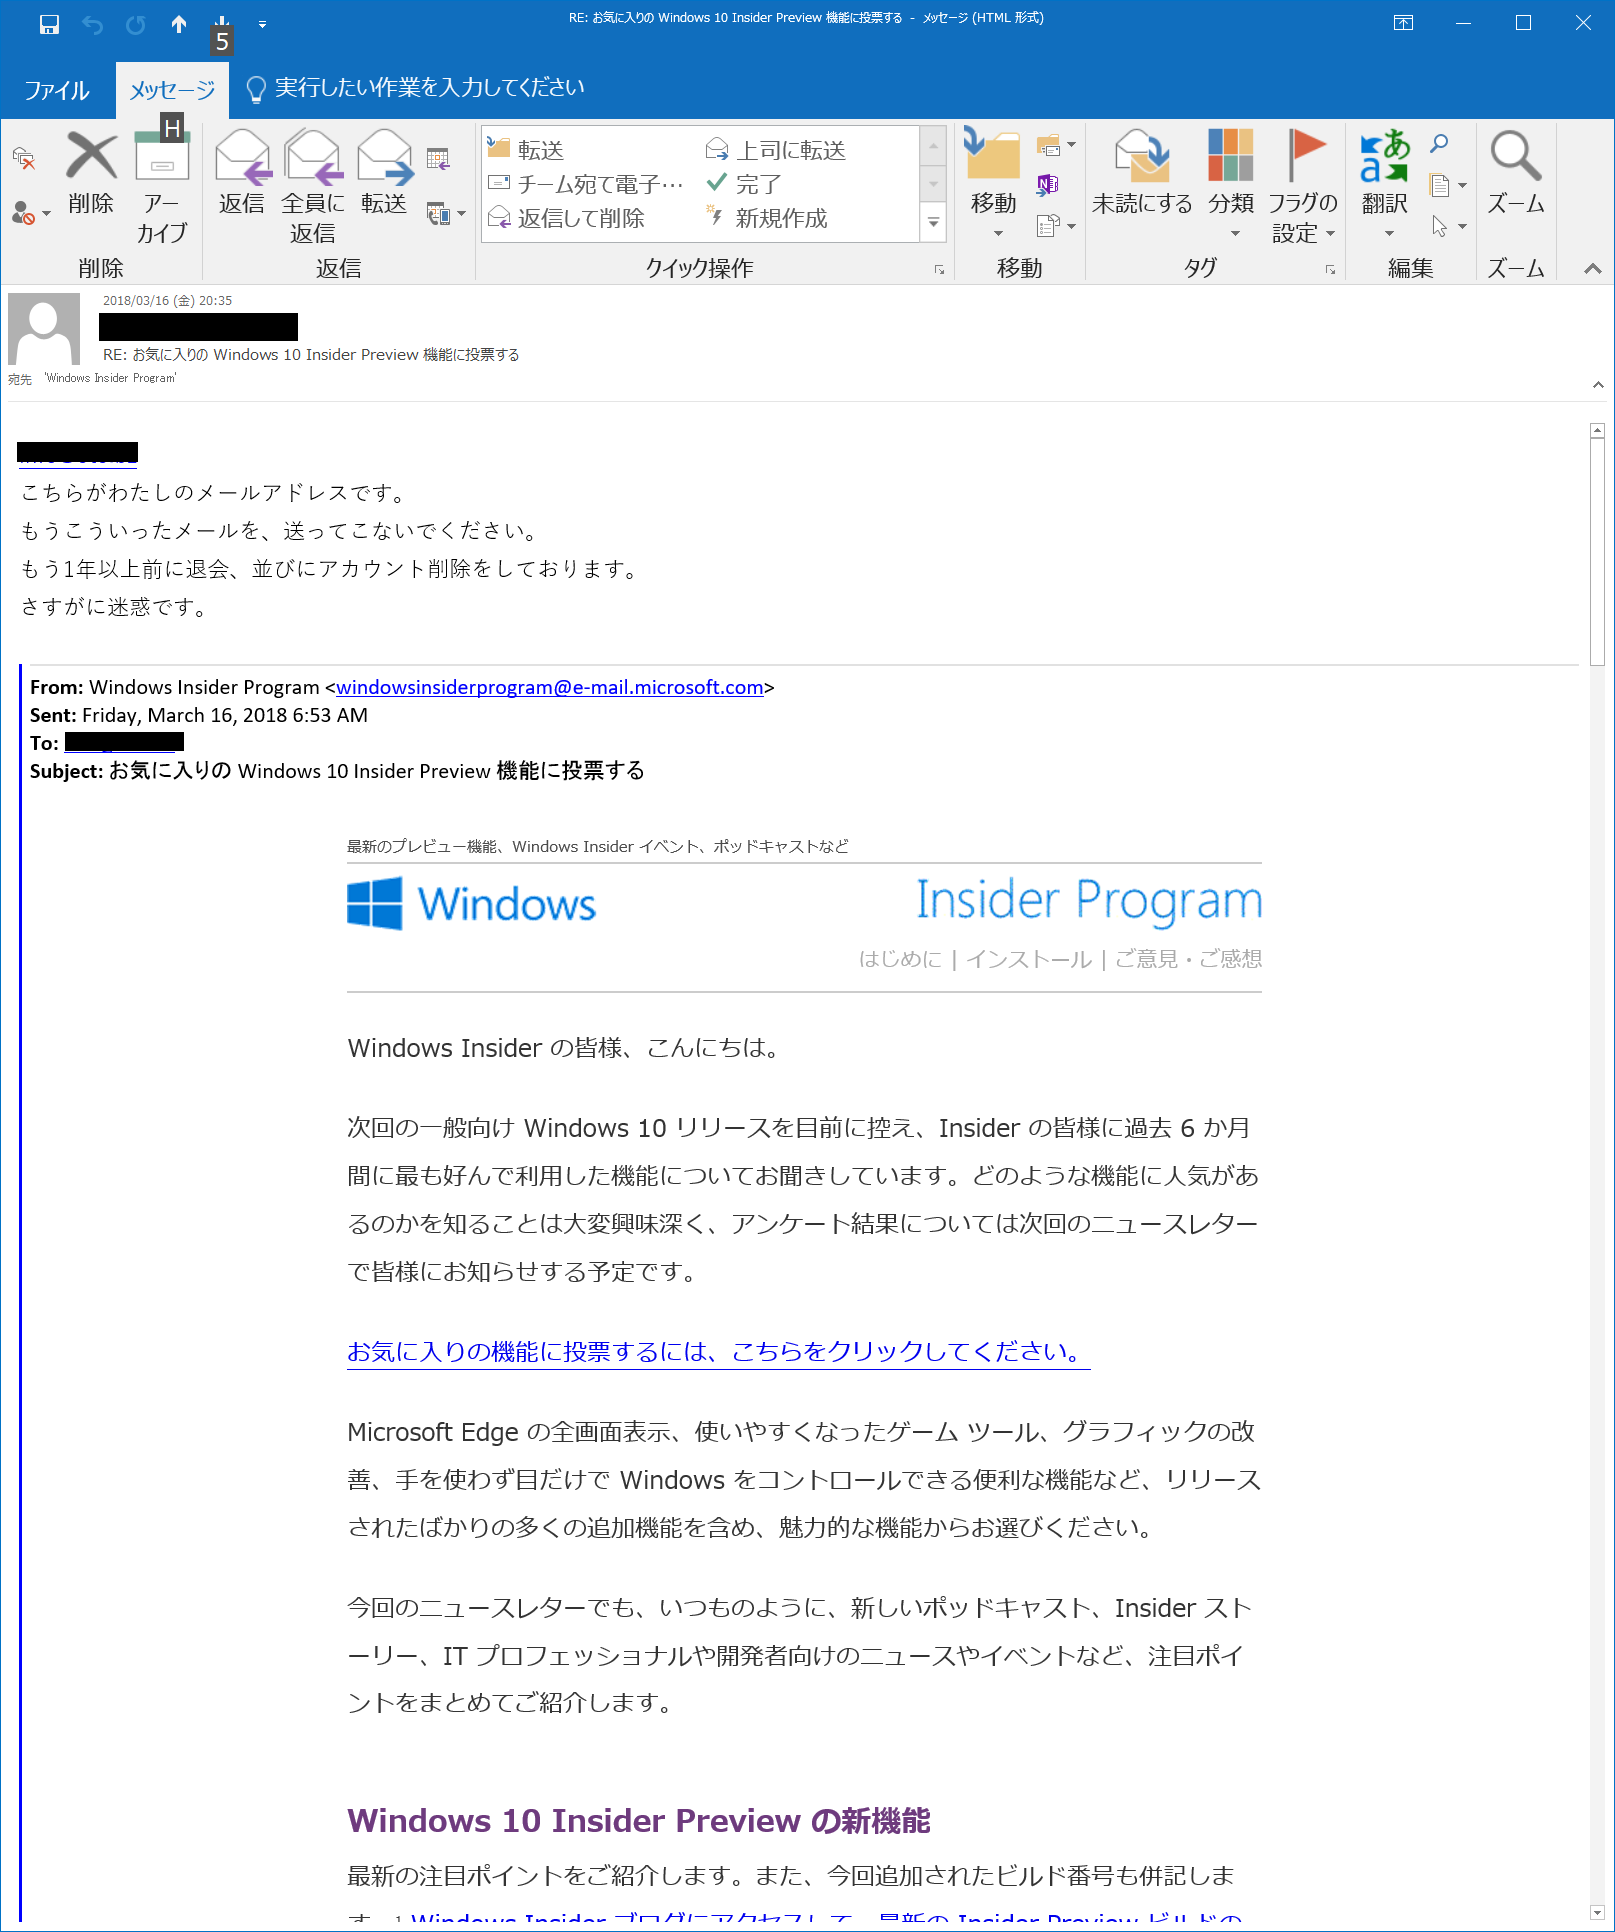 Windows Insider Program をやめてもメールが送られてくる マイクロソフト コミュニティ